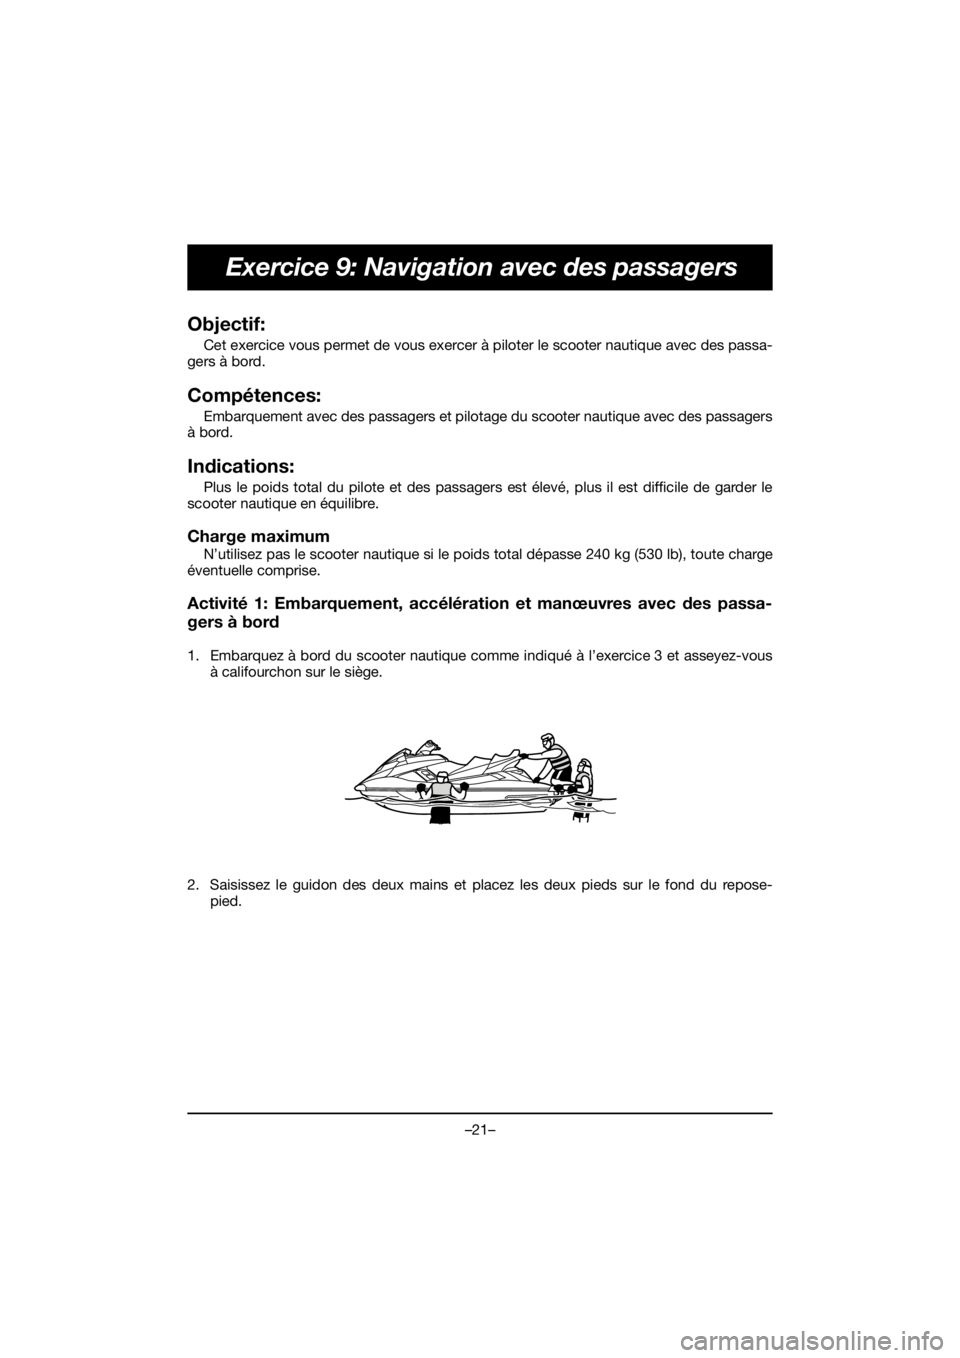 YAMAHA FX HO 2020  Bruksanvisningar (in Swedish) –21–
Exercice 9: Navigation avec des passagers
Objectif: 
Cet exercice vous permet de vous exercer à piloter le scooter nautique avec des passa-
gers à bord.
Compétences: 
Embarquement avec des